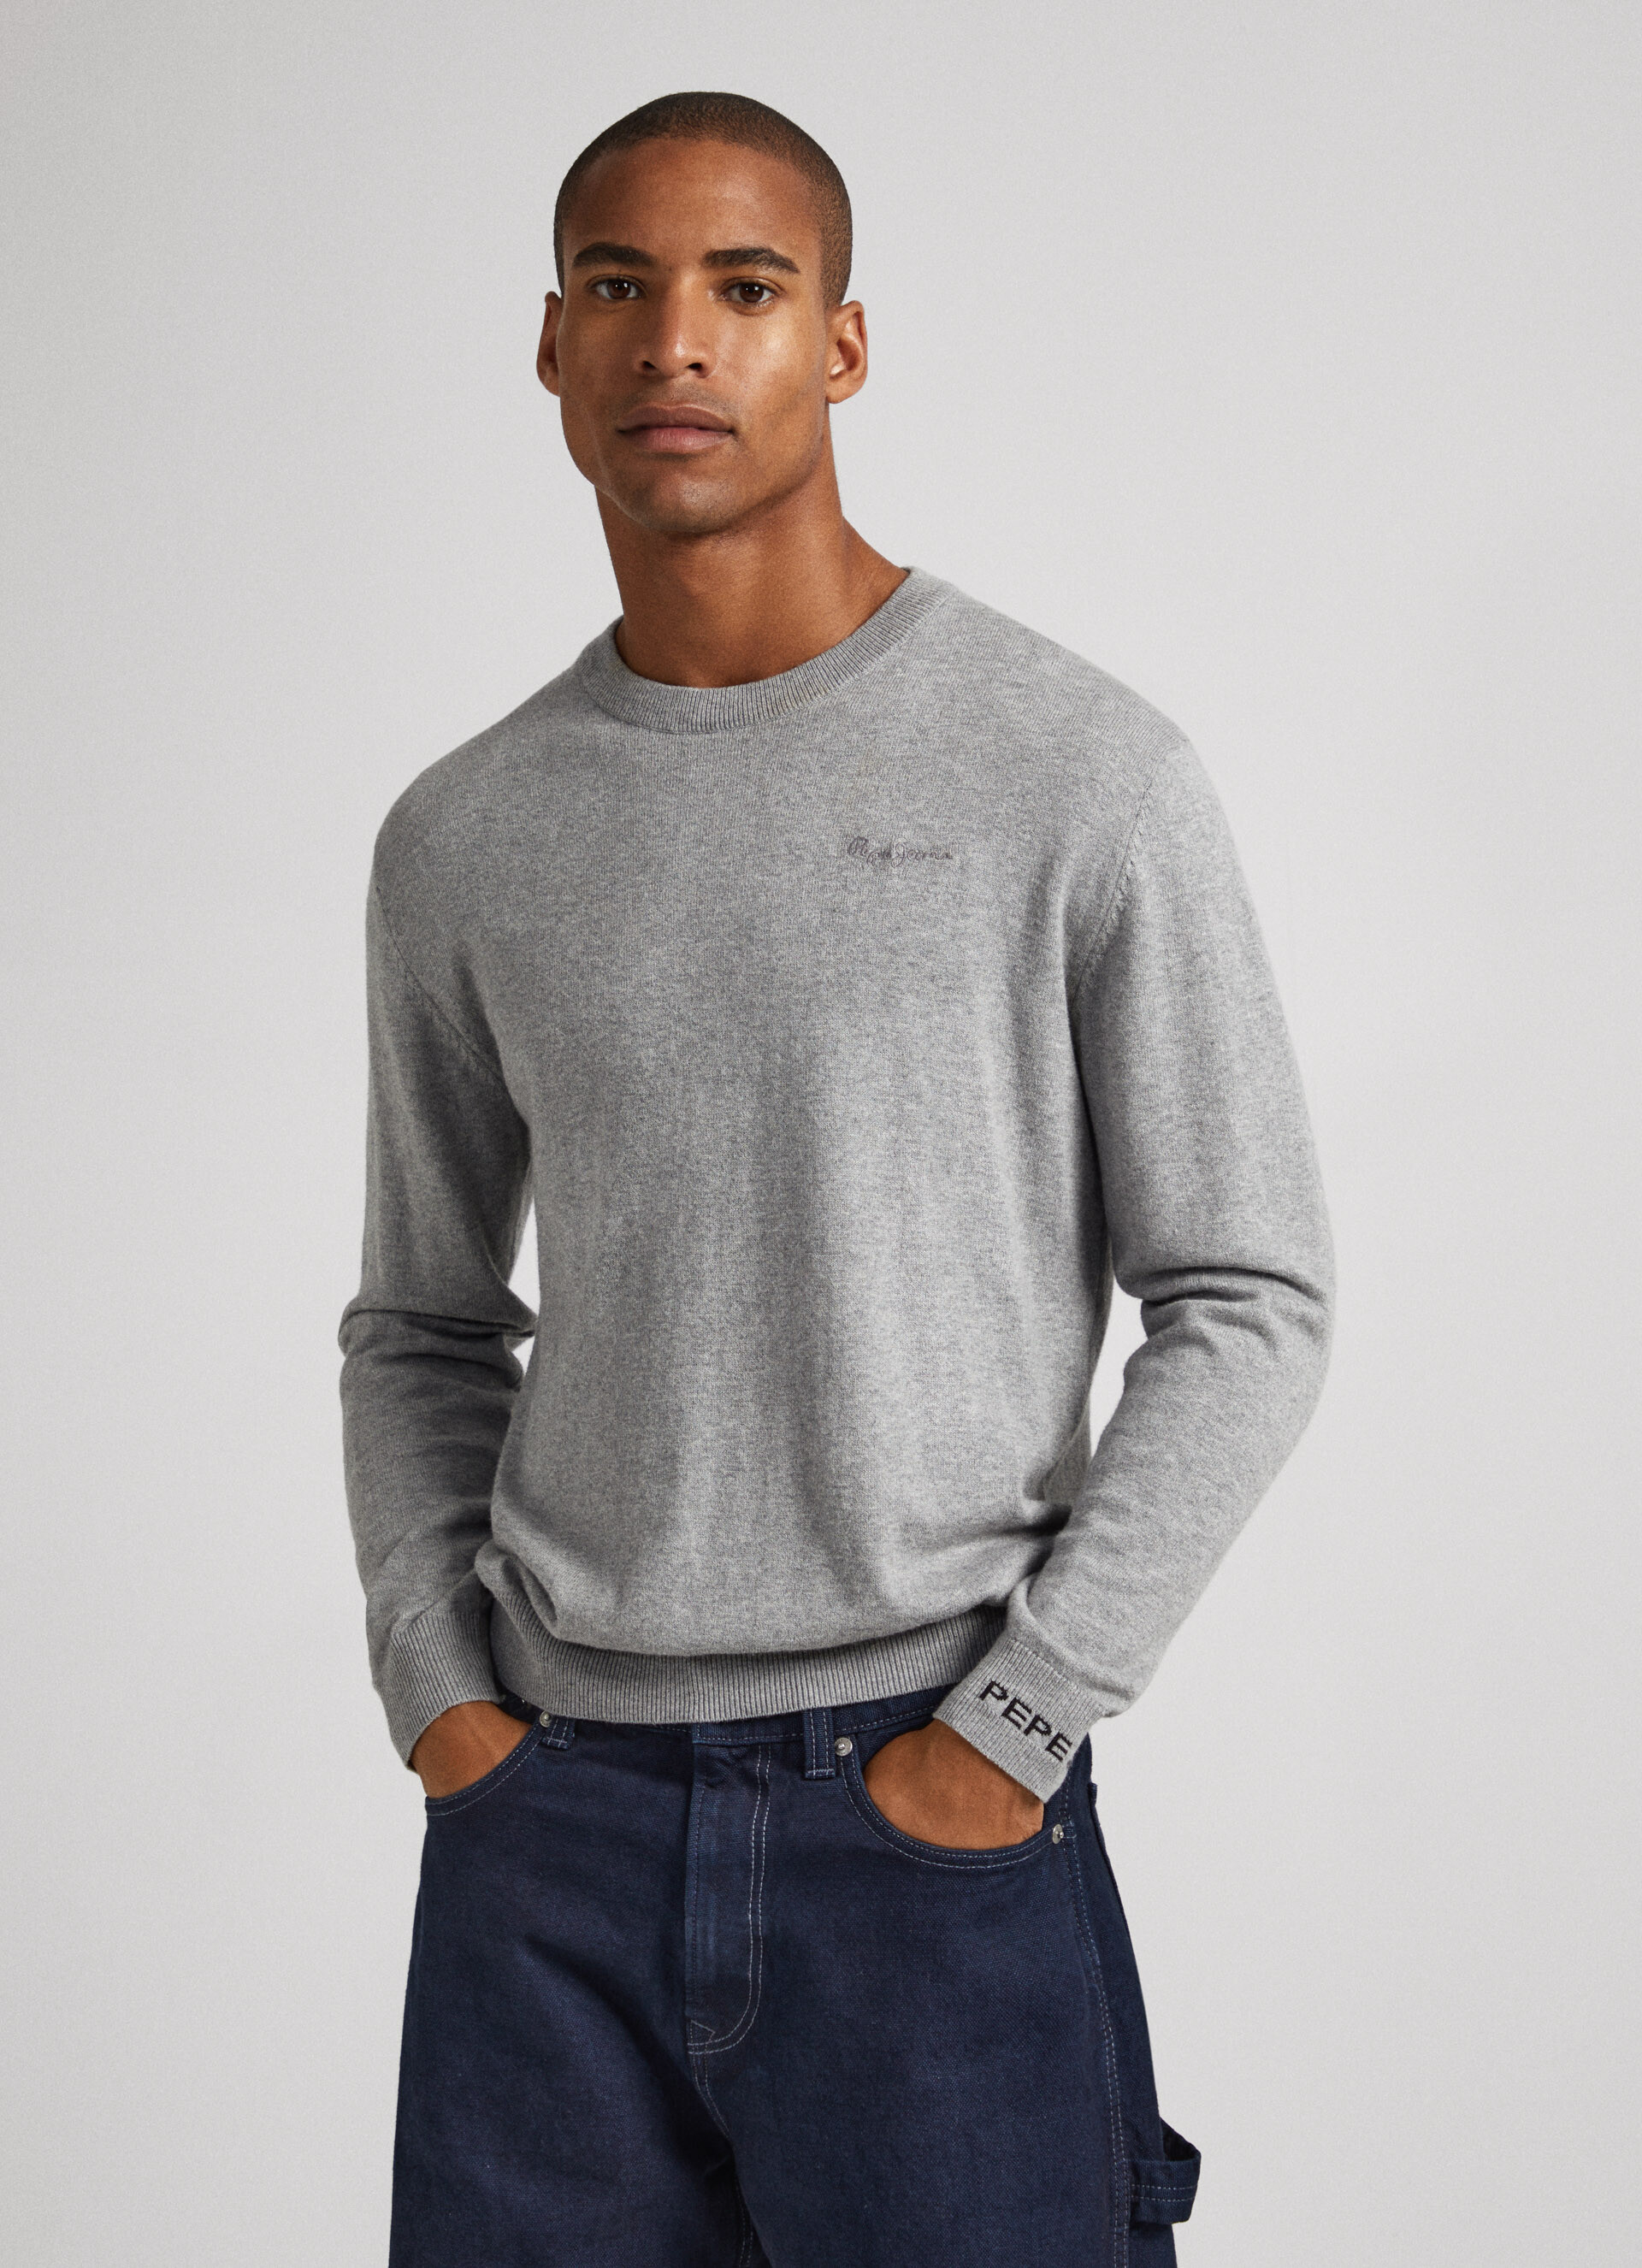 HERREN Pullovers & Sweatshirts Stricken Mehrfarbig XL Pepe Jeans Pullover Rabatt 91 % 